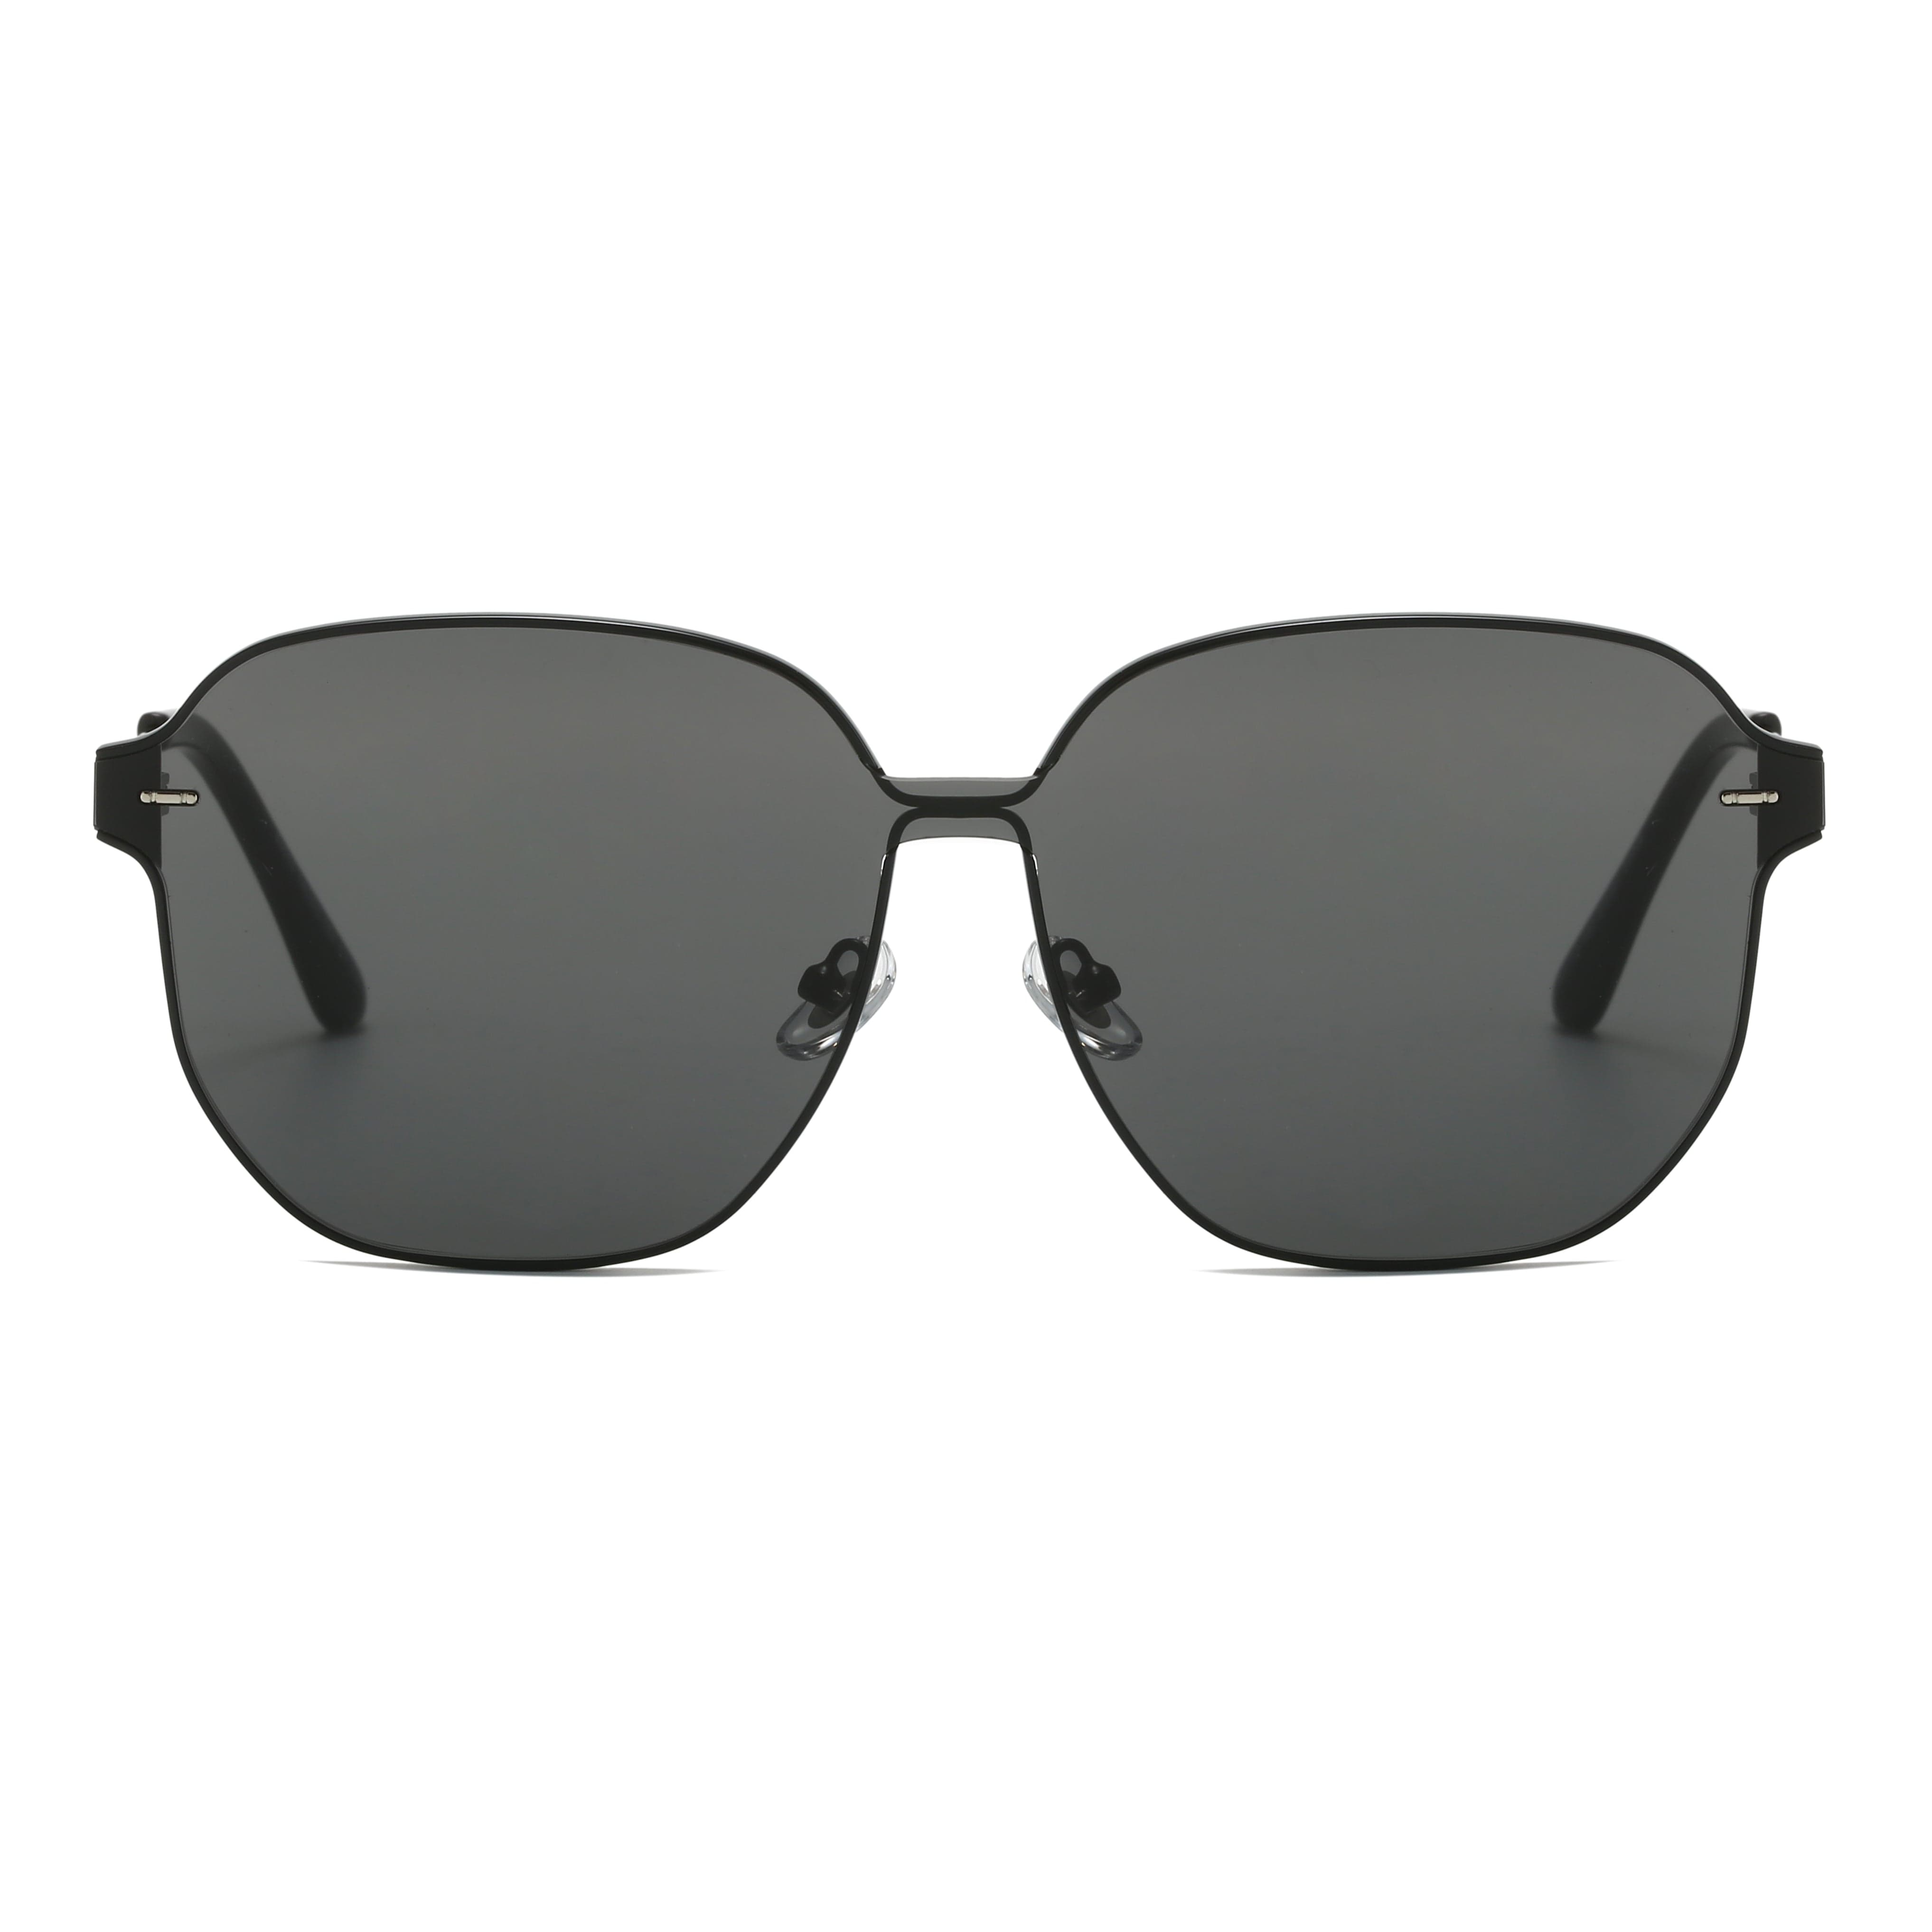 GIUSTIZIERI VECCHI Sunglasses Large / Black PristinePearl Uno